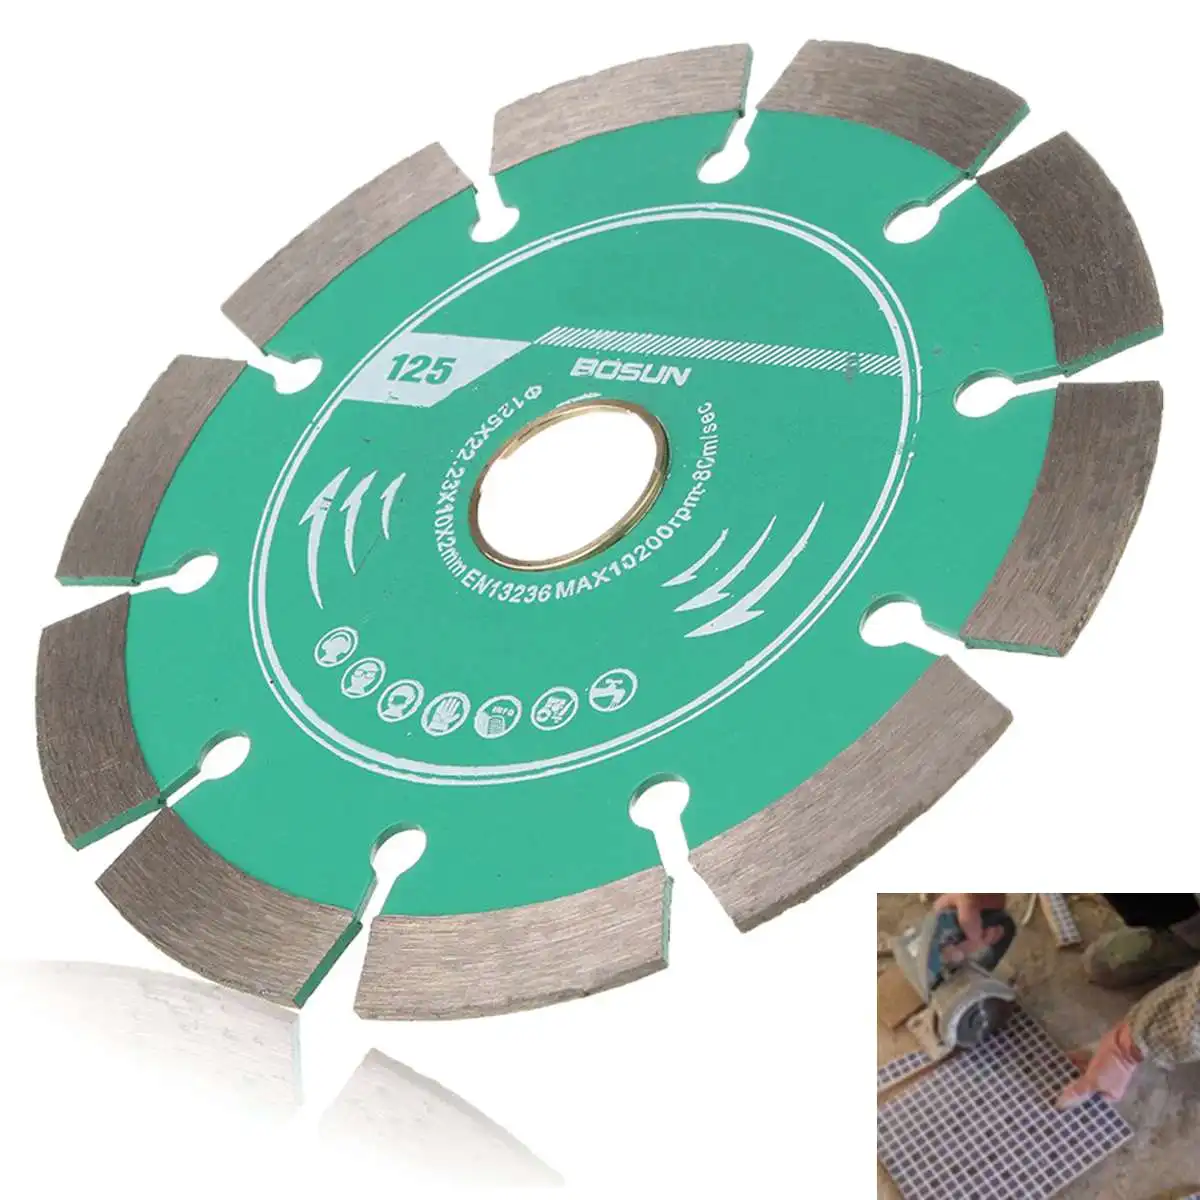 1 шт. 125 мм Алмазная пила из металлического сплава диск для резки бетона мраморной кладки плитки толщина 2 мм Инженерная резка